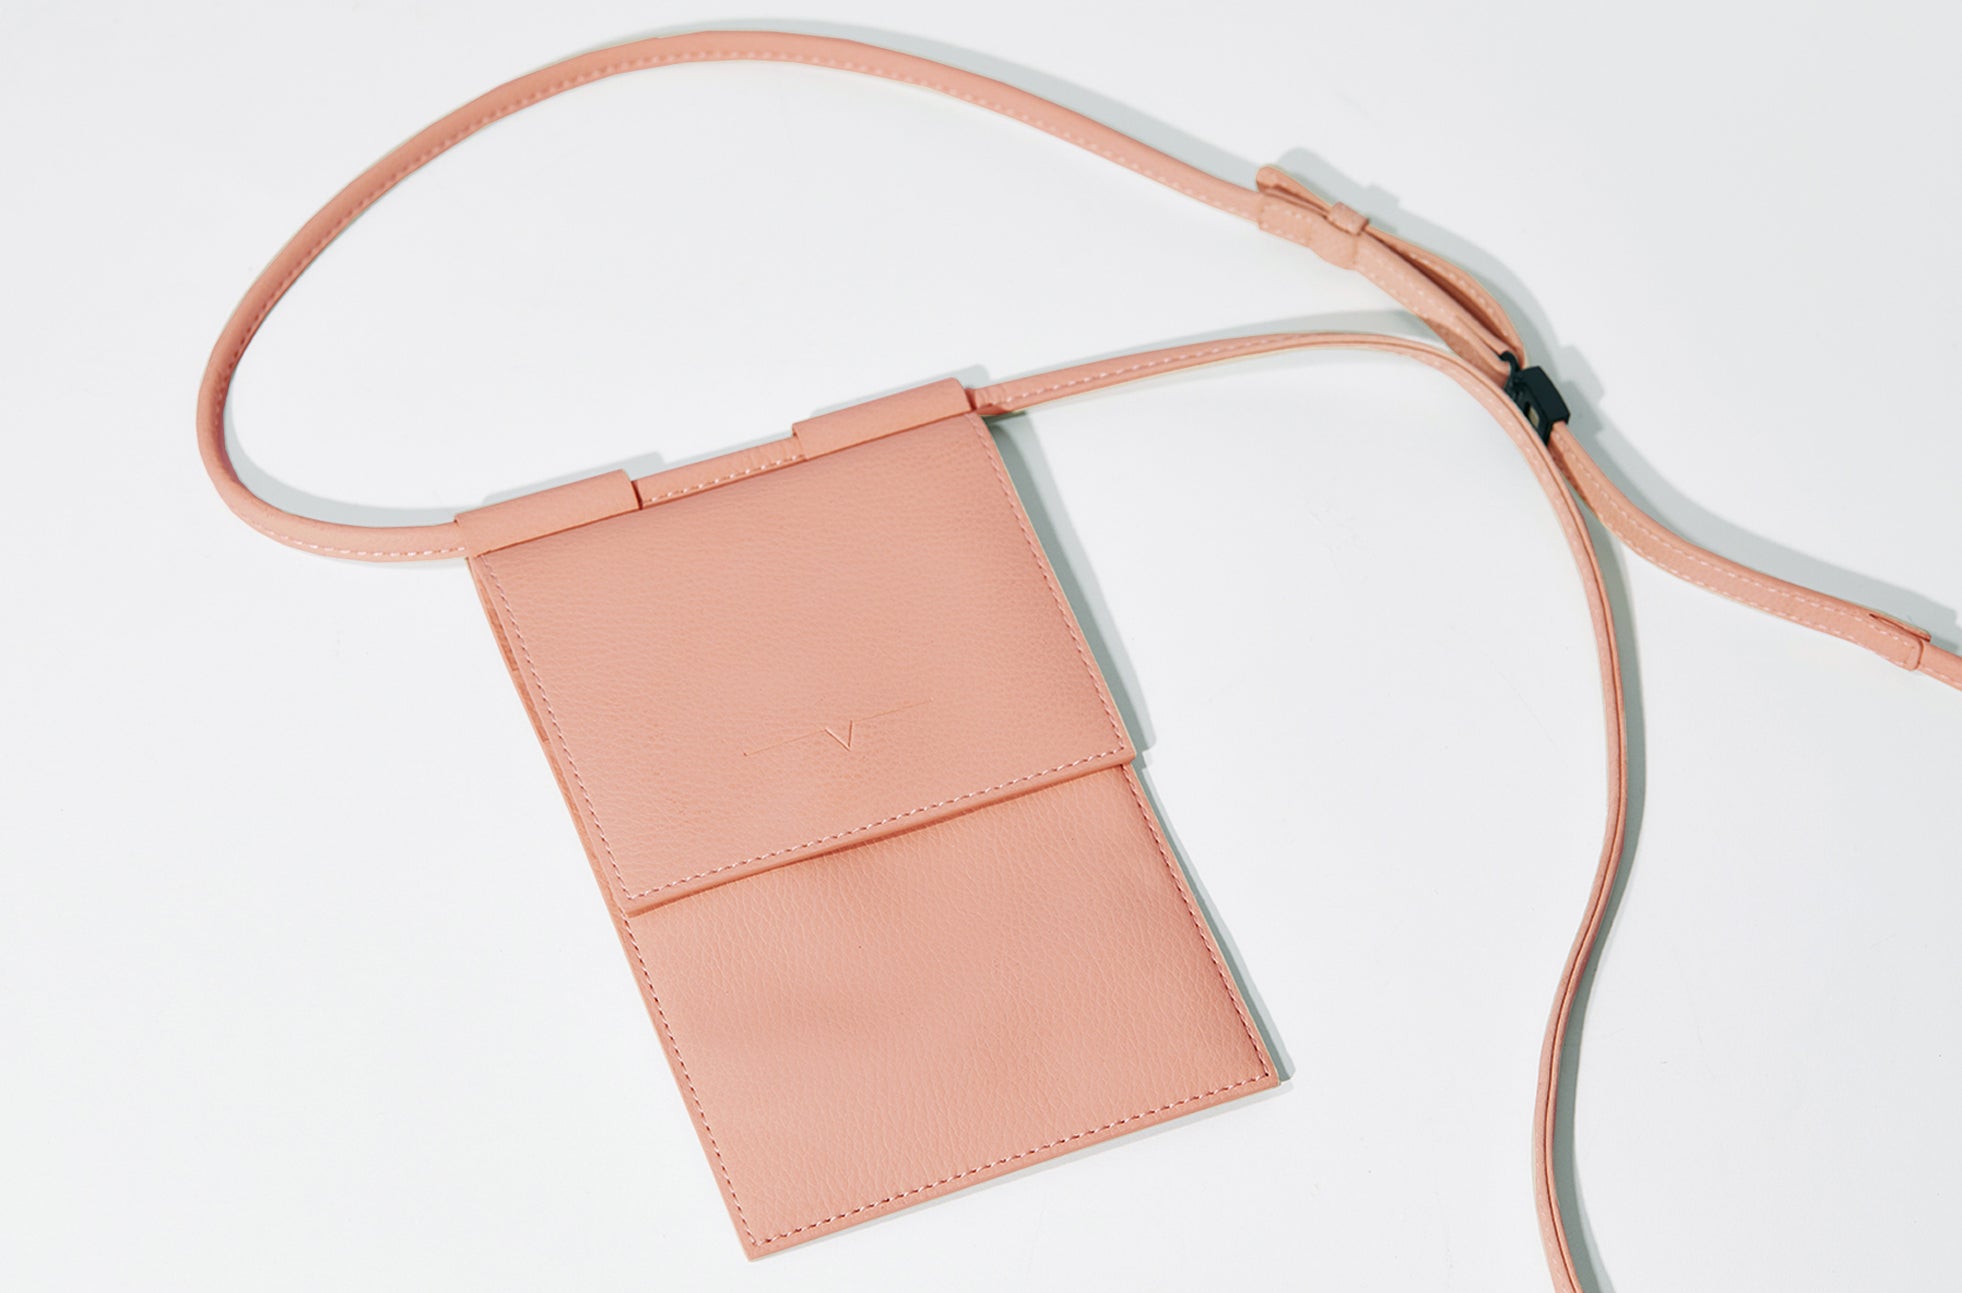 The Micro Bag in Technik in Blush image 